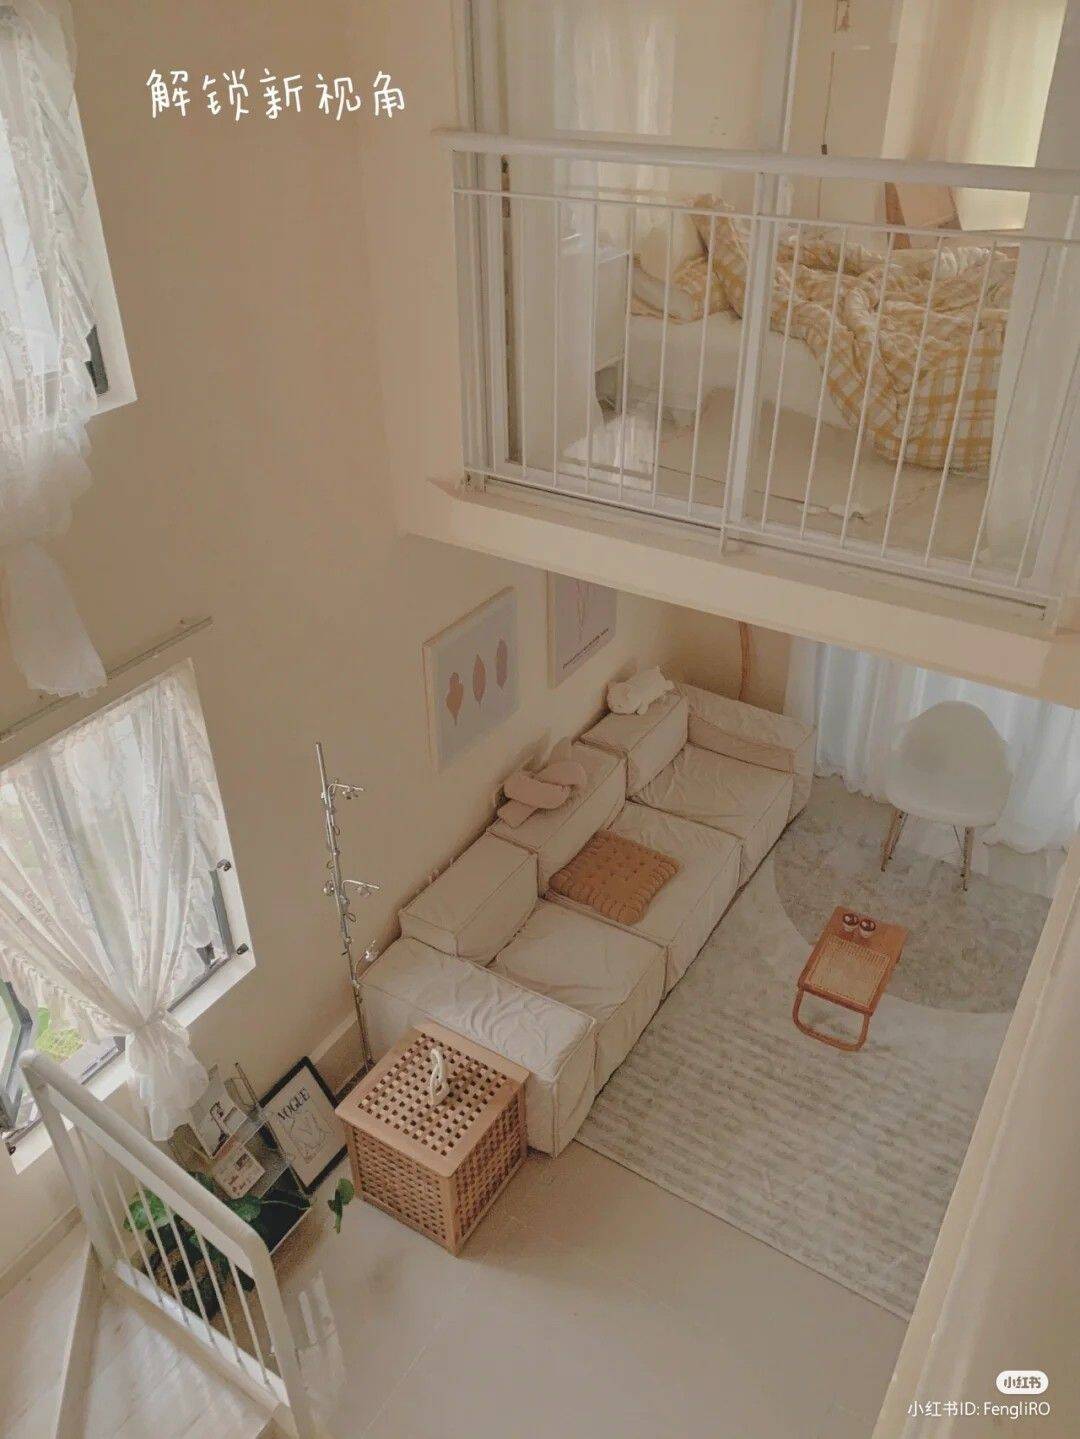 Thiết kế căn hộ rộng khoảng 15 - 20m2 có gác lửng dành cho cô nàng độc thân, tự lập